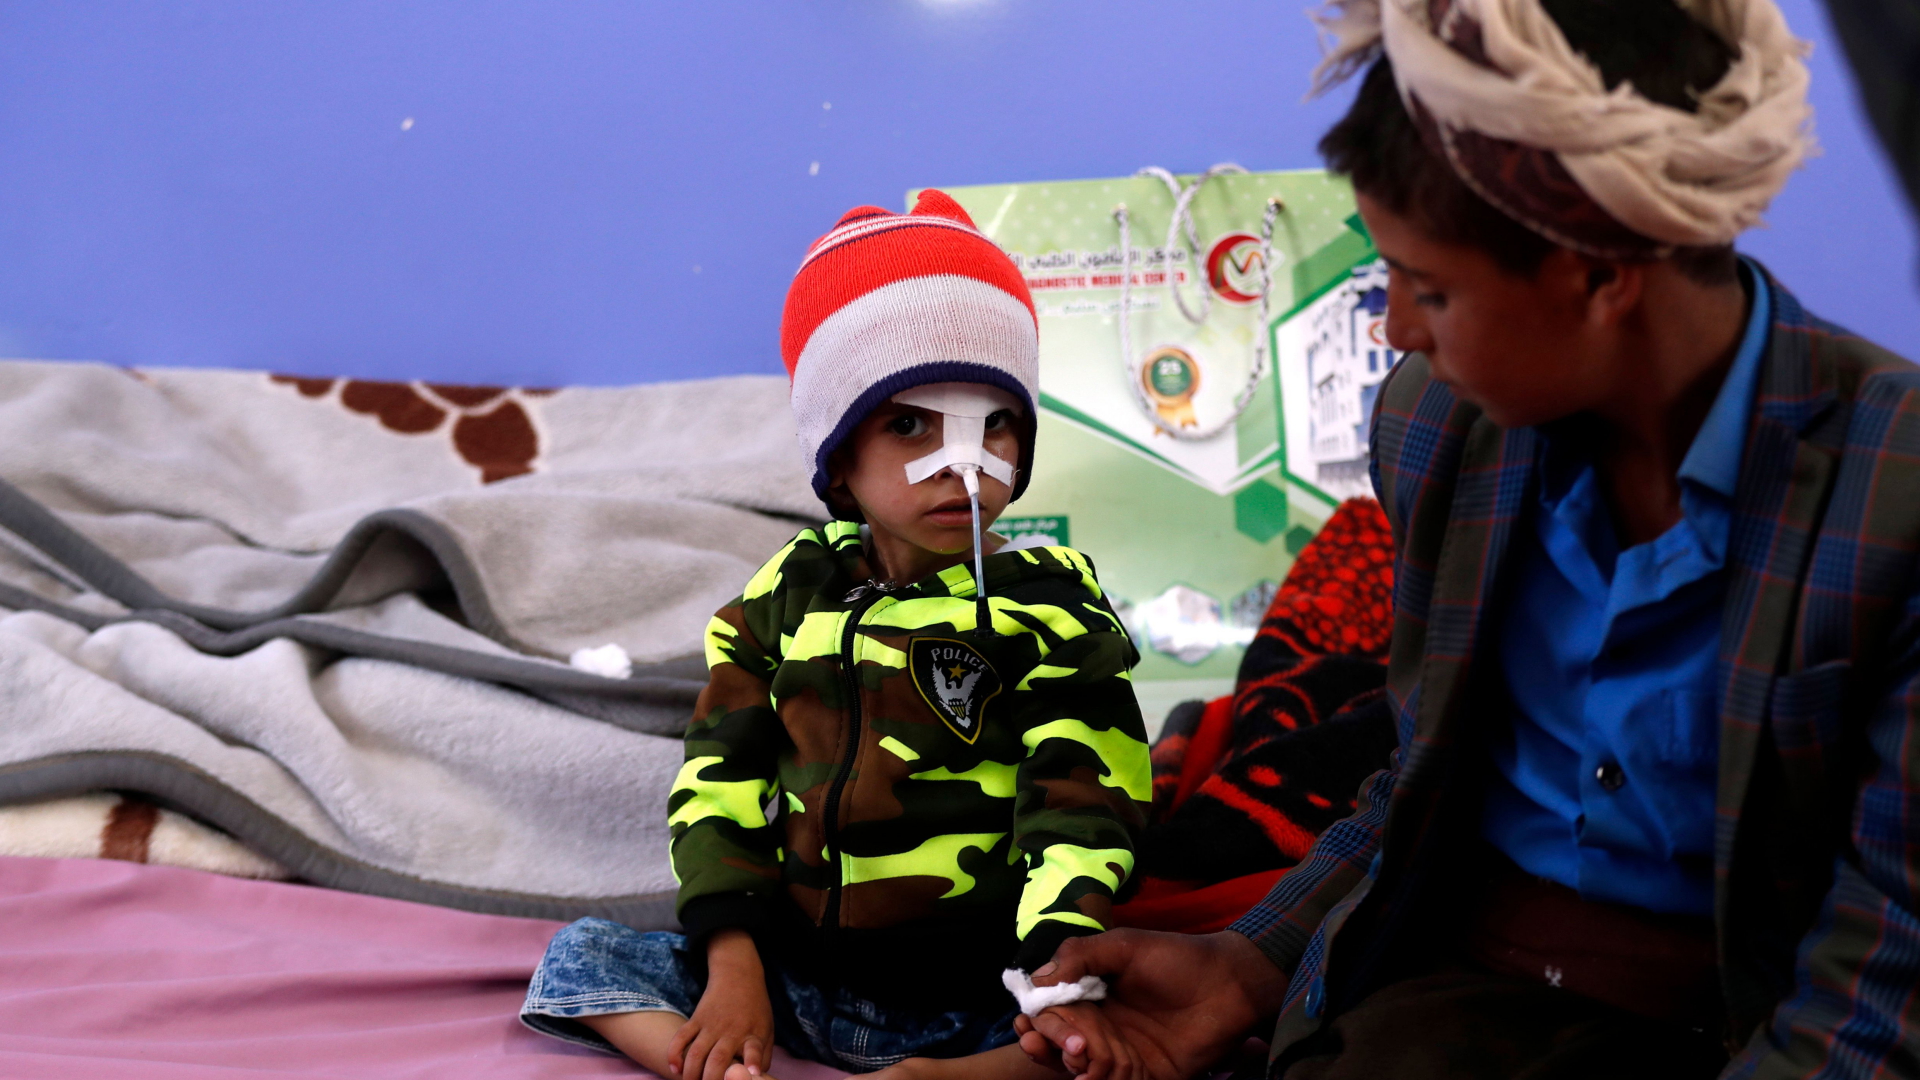 Ein Jugendlicher mit seinem unterernährten kleinen Bruder in einem Krankenhaus in Sanaa/Yemen | YAHYA ARHAB/EPA-EFE/Shutterstock